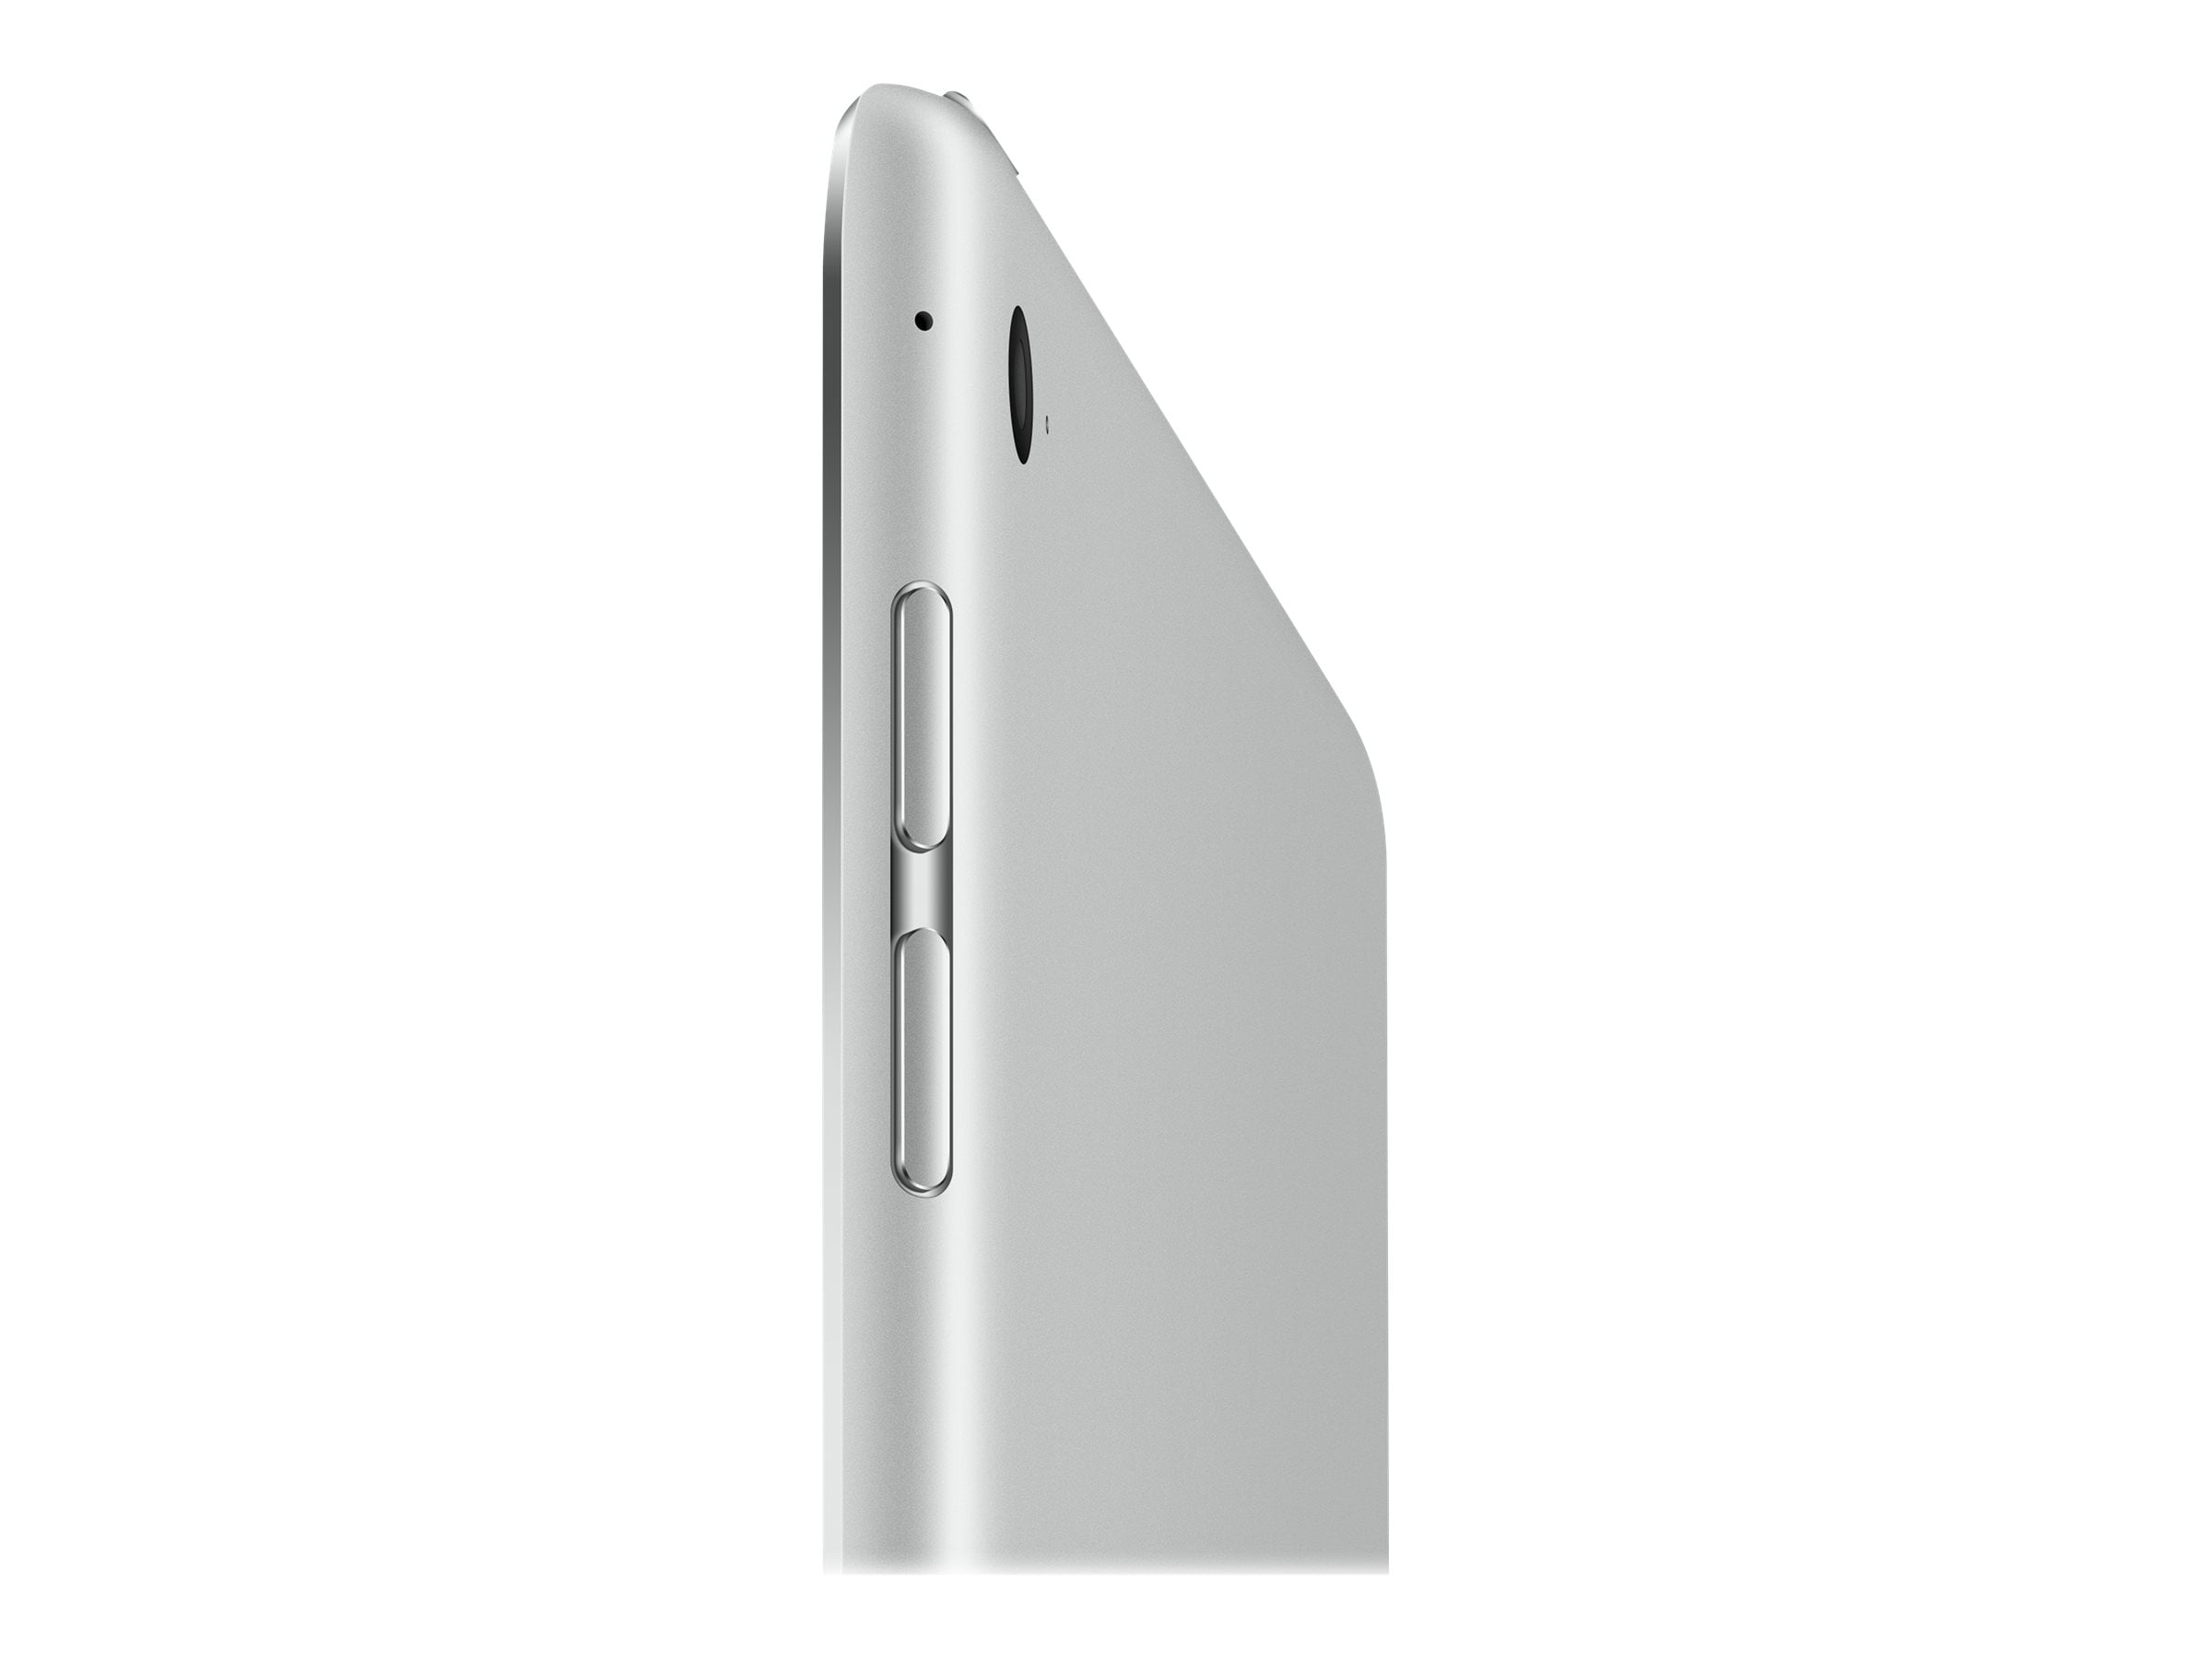 Apple iPad Mini 4 Wi-Fi - 4th Generation - Tablet - 32 GB - 7.9